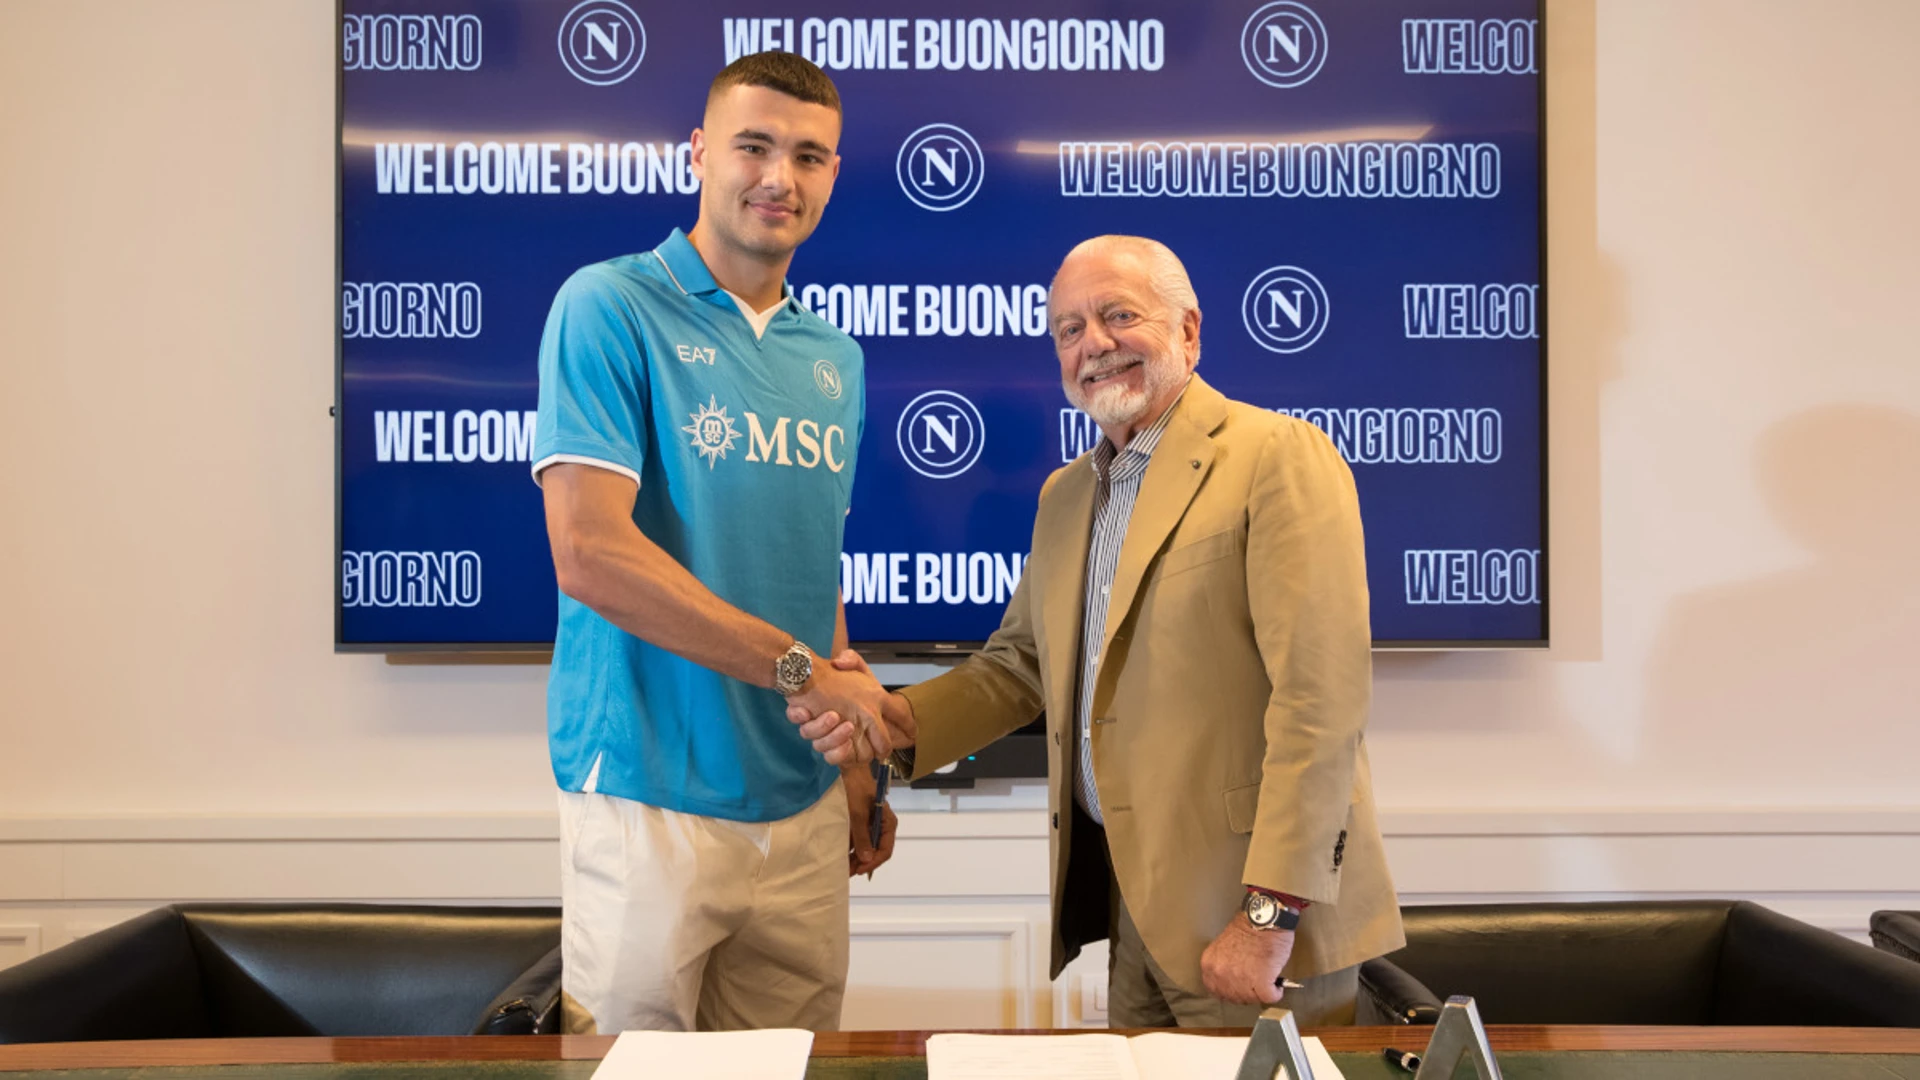 Buongiorno joins Napoli from Torino